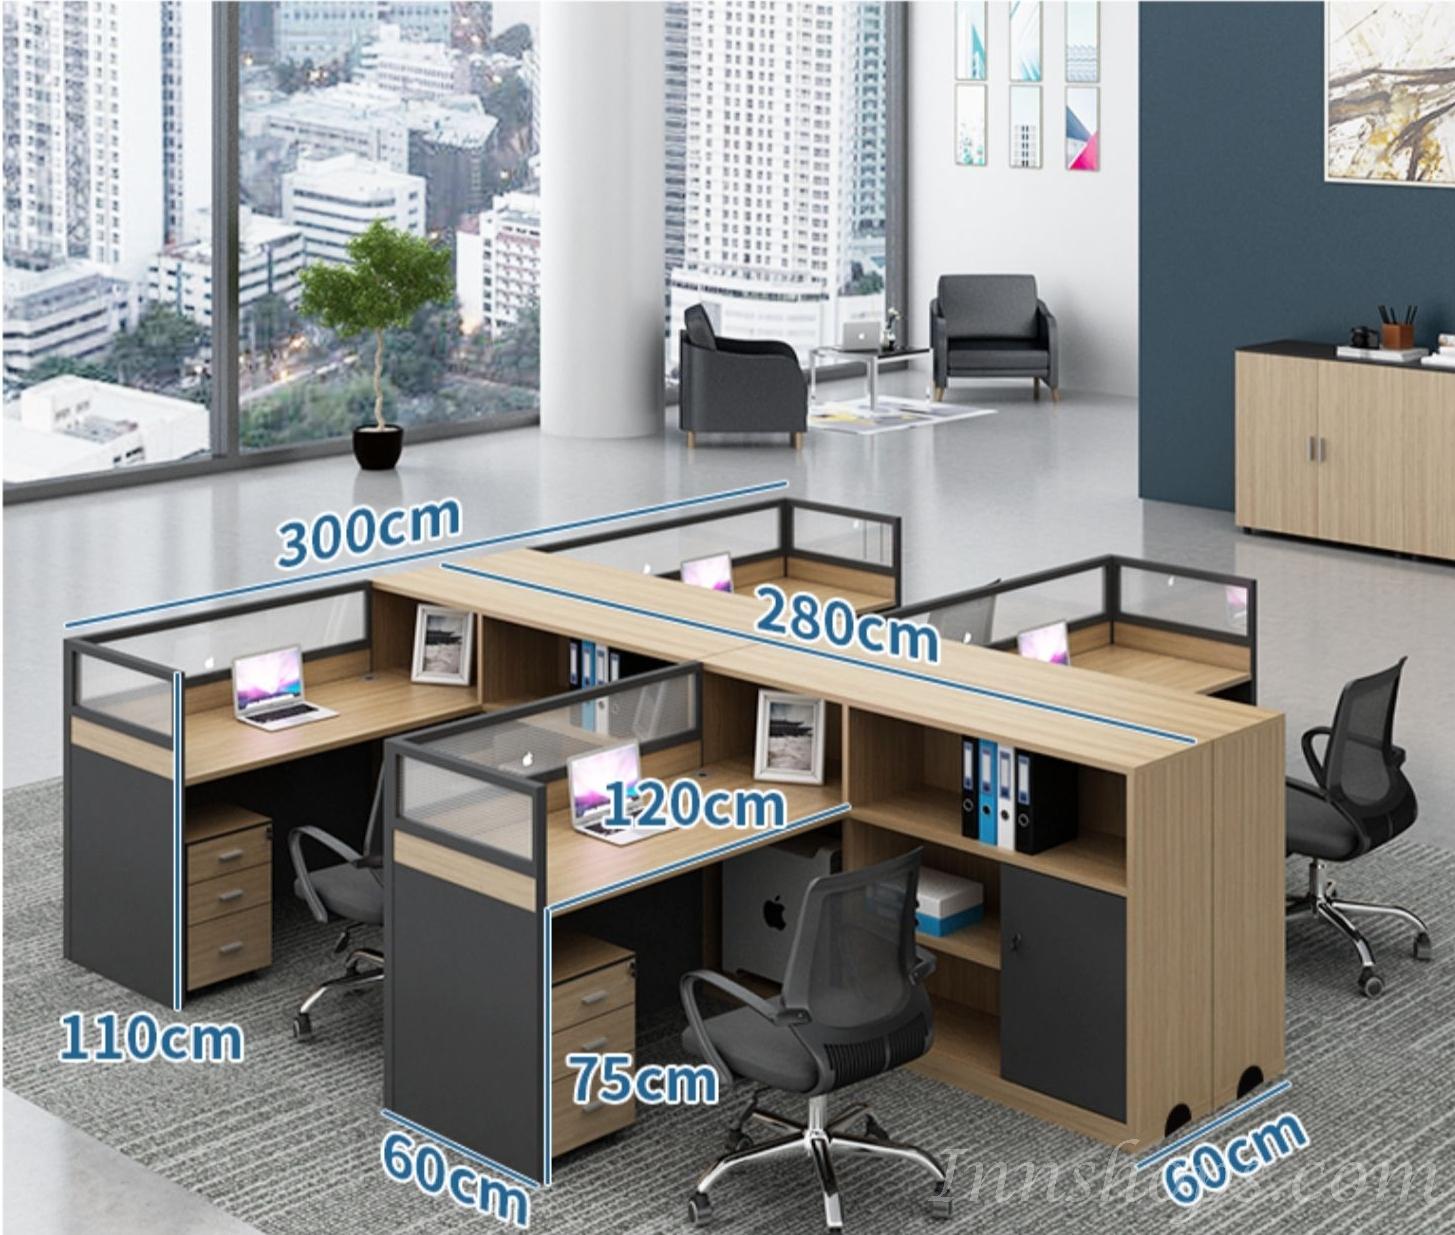 辦公室傢俬 桌椅組合(IS0171)